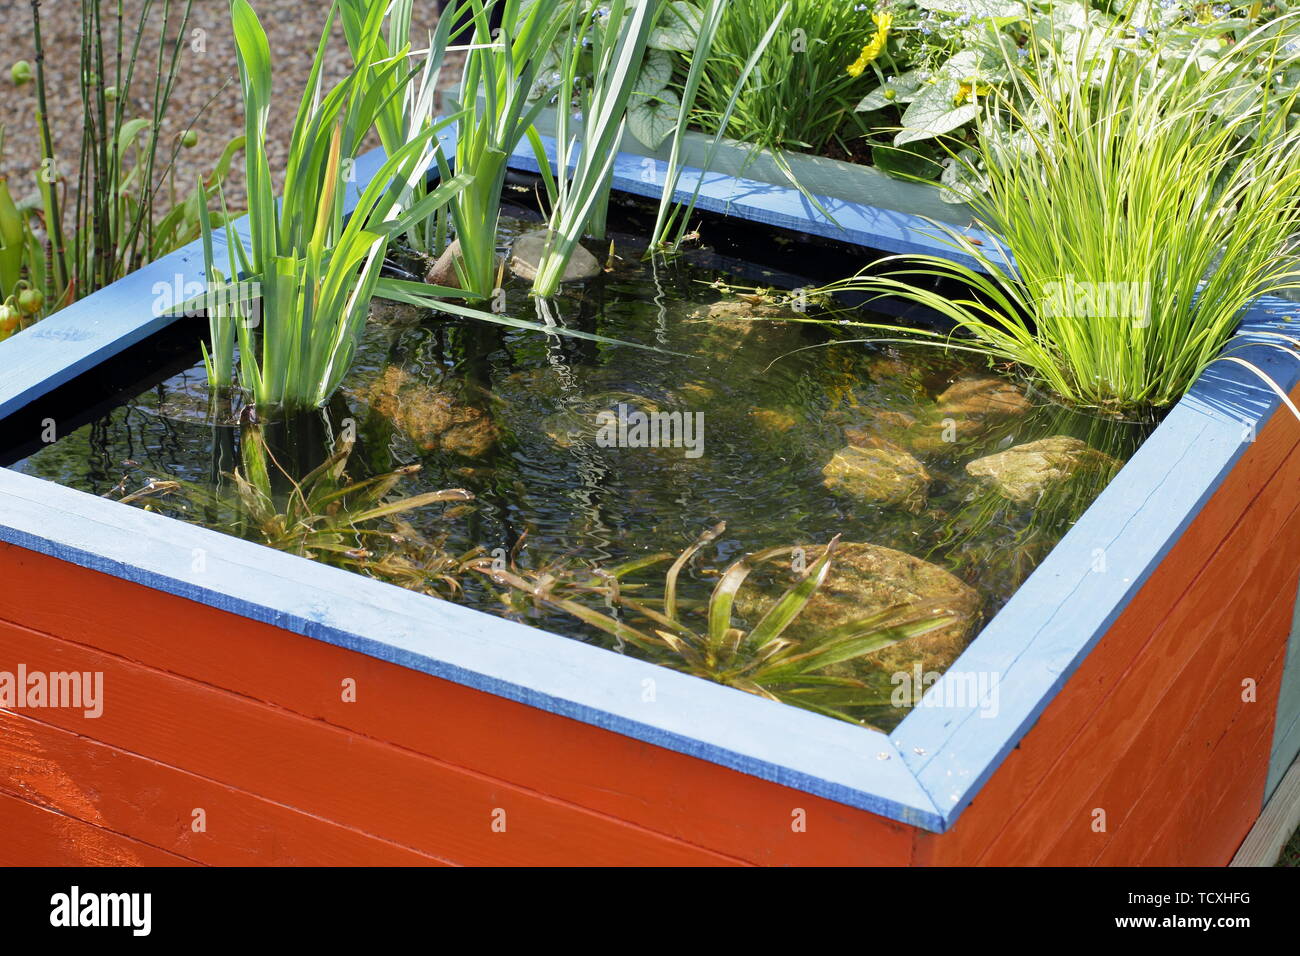 Angehobene Gartenteich. Kleiner Garten Teich aus recycelten Paletten aus Holz gemacht Stockfoto